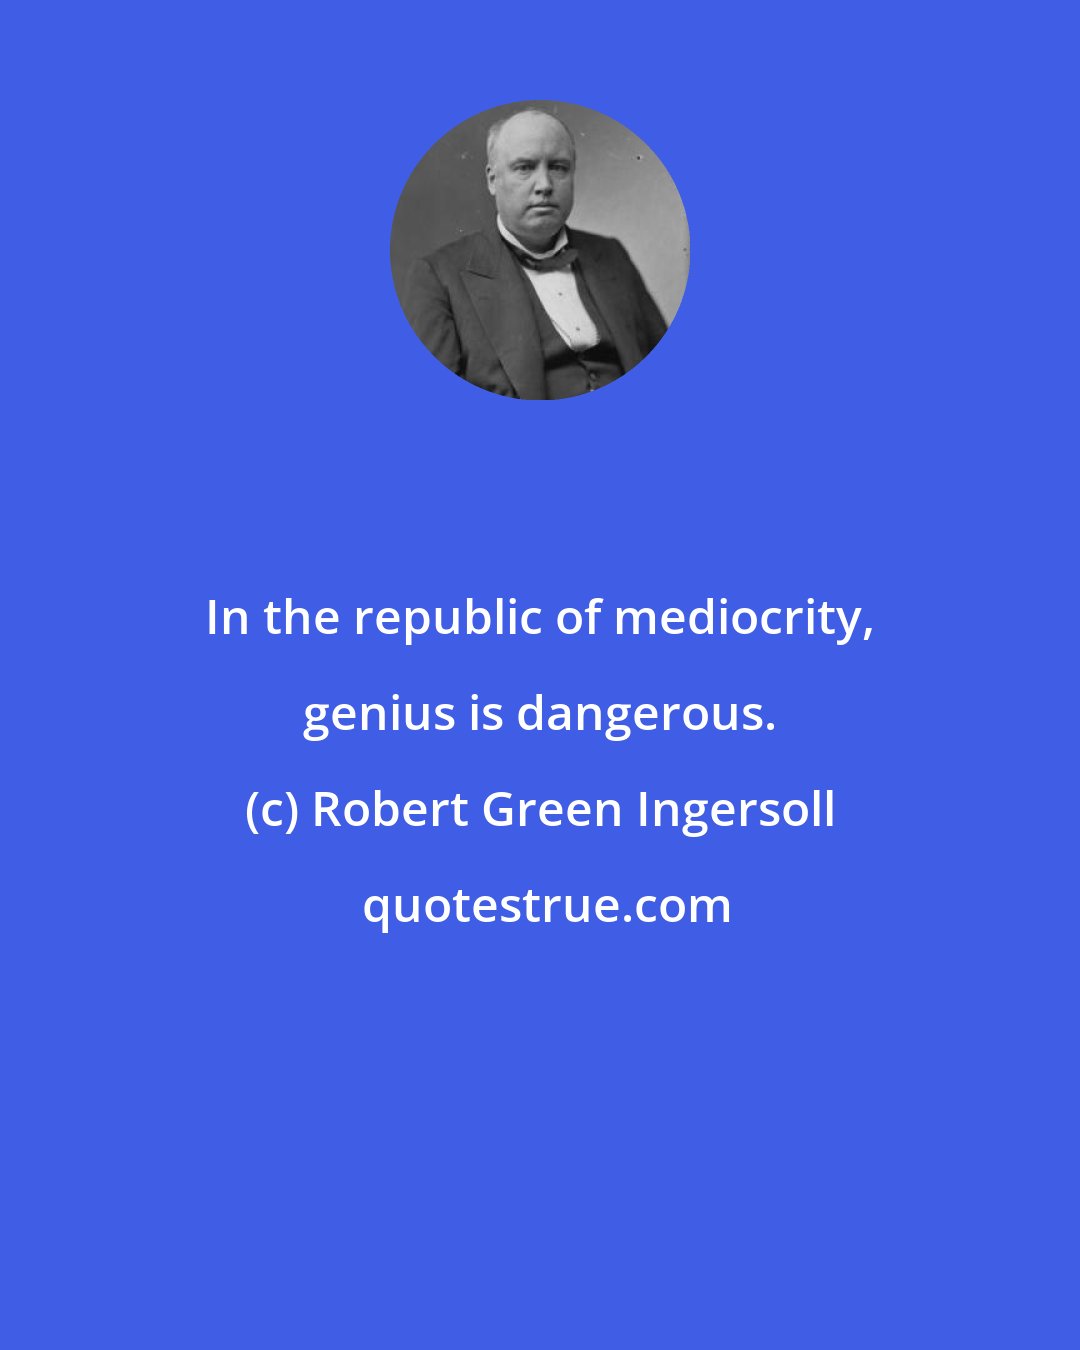 Robert Green Ingersoll: In the republic of mediocrity, genius is dangerous.